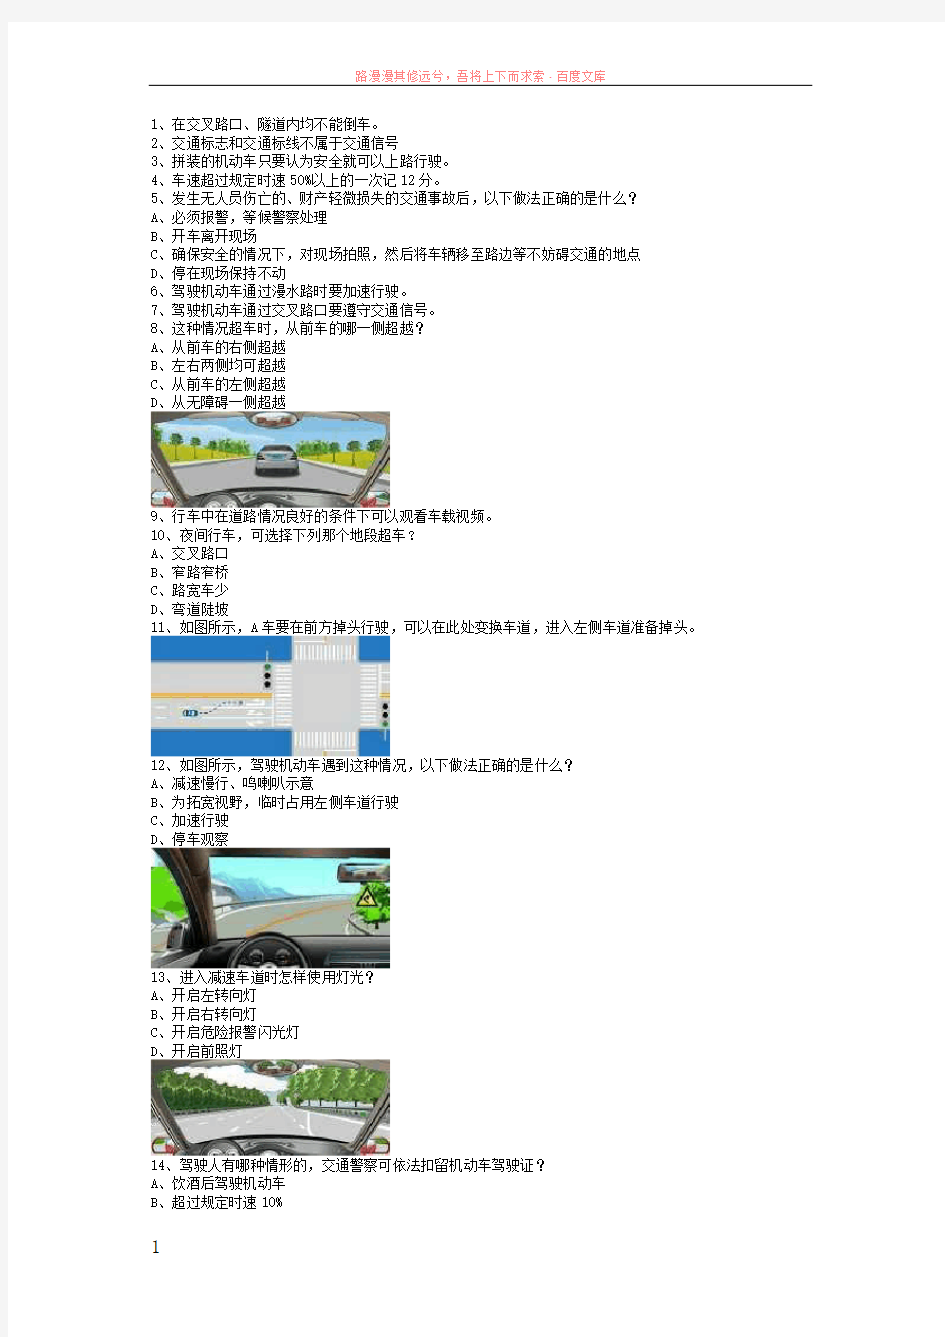 江北县驾校理论考试c2自动档小车答题技巧 